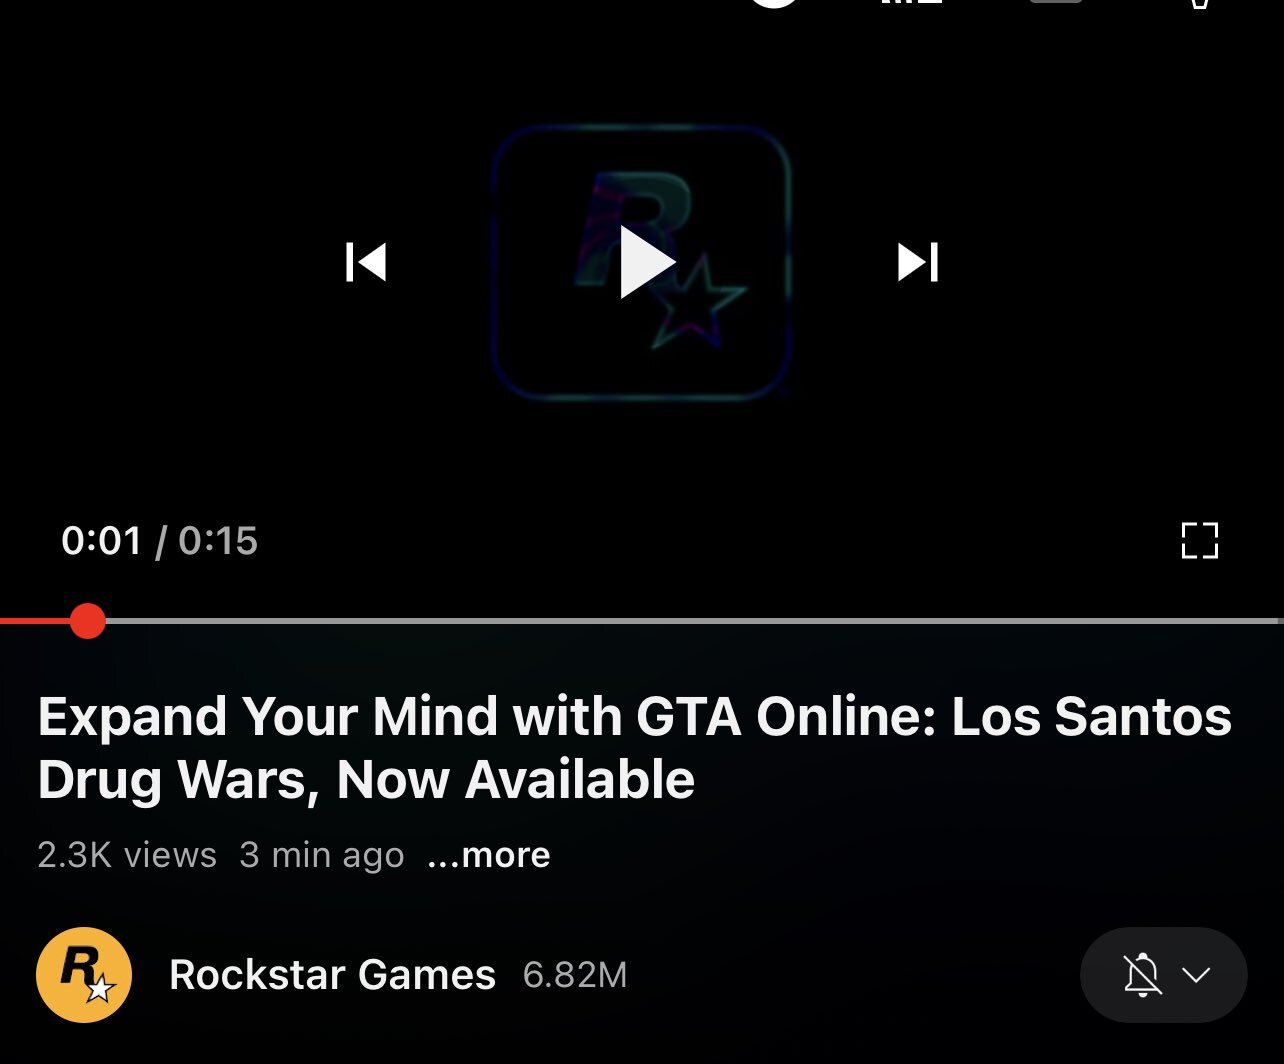 Imagem mostra que "teaser de GTA VI" postado nas páginas da Rockstar é, na verdade, um trailer para uma atualização de GTA Online